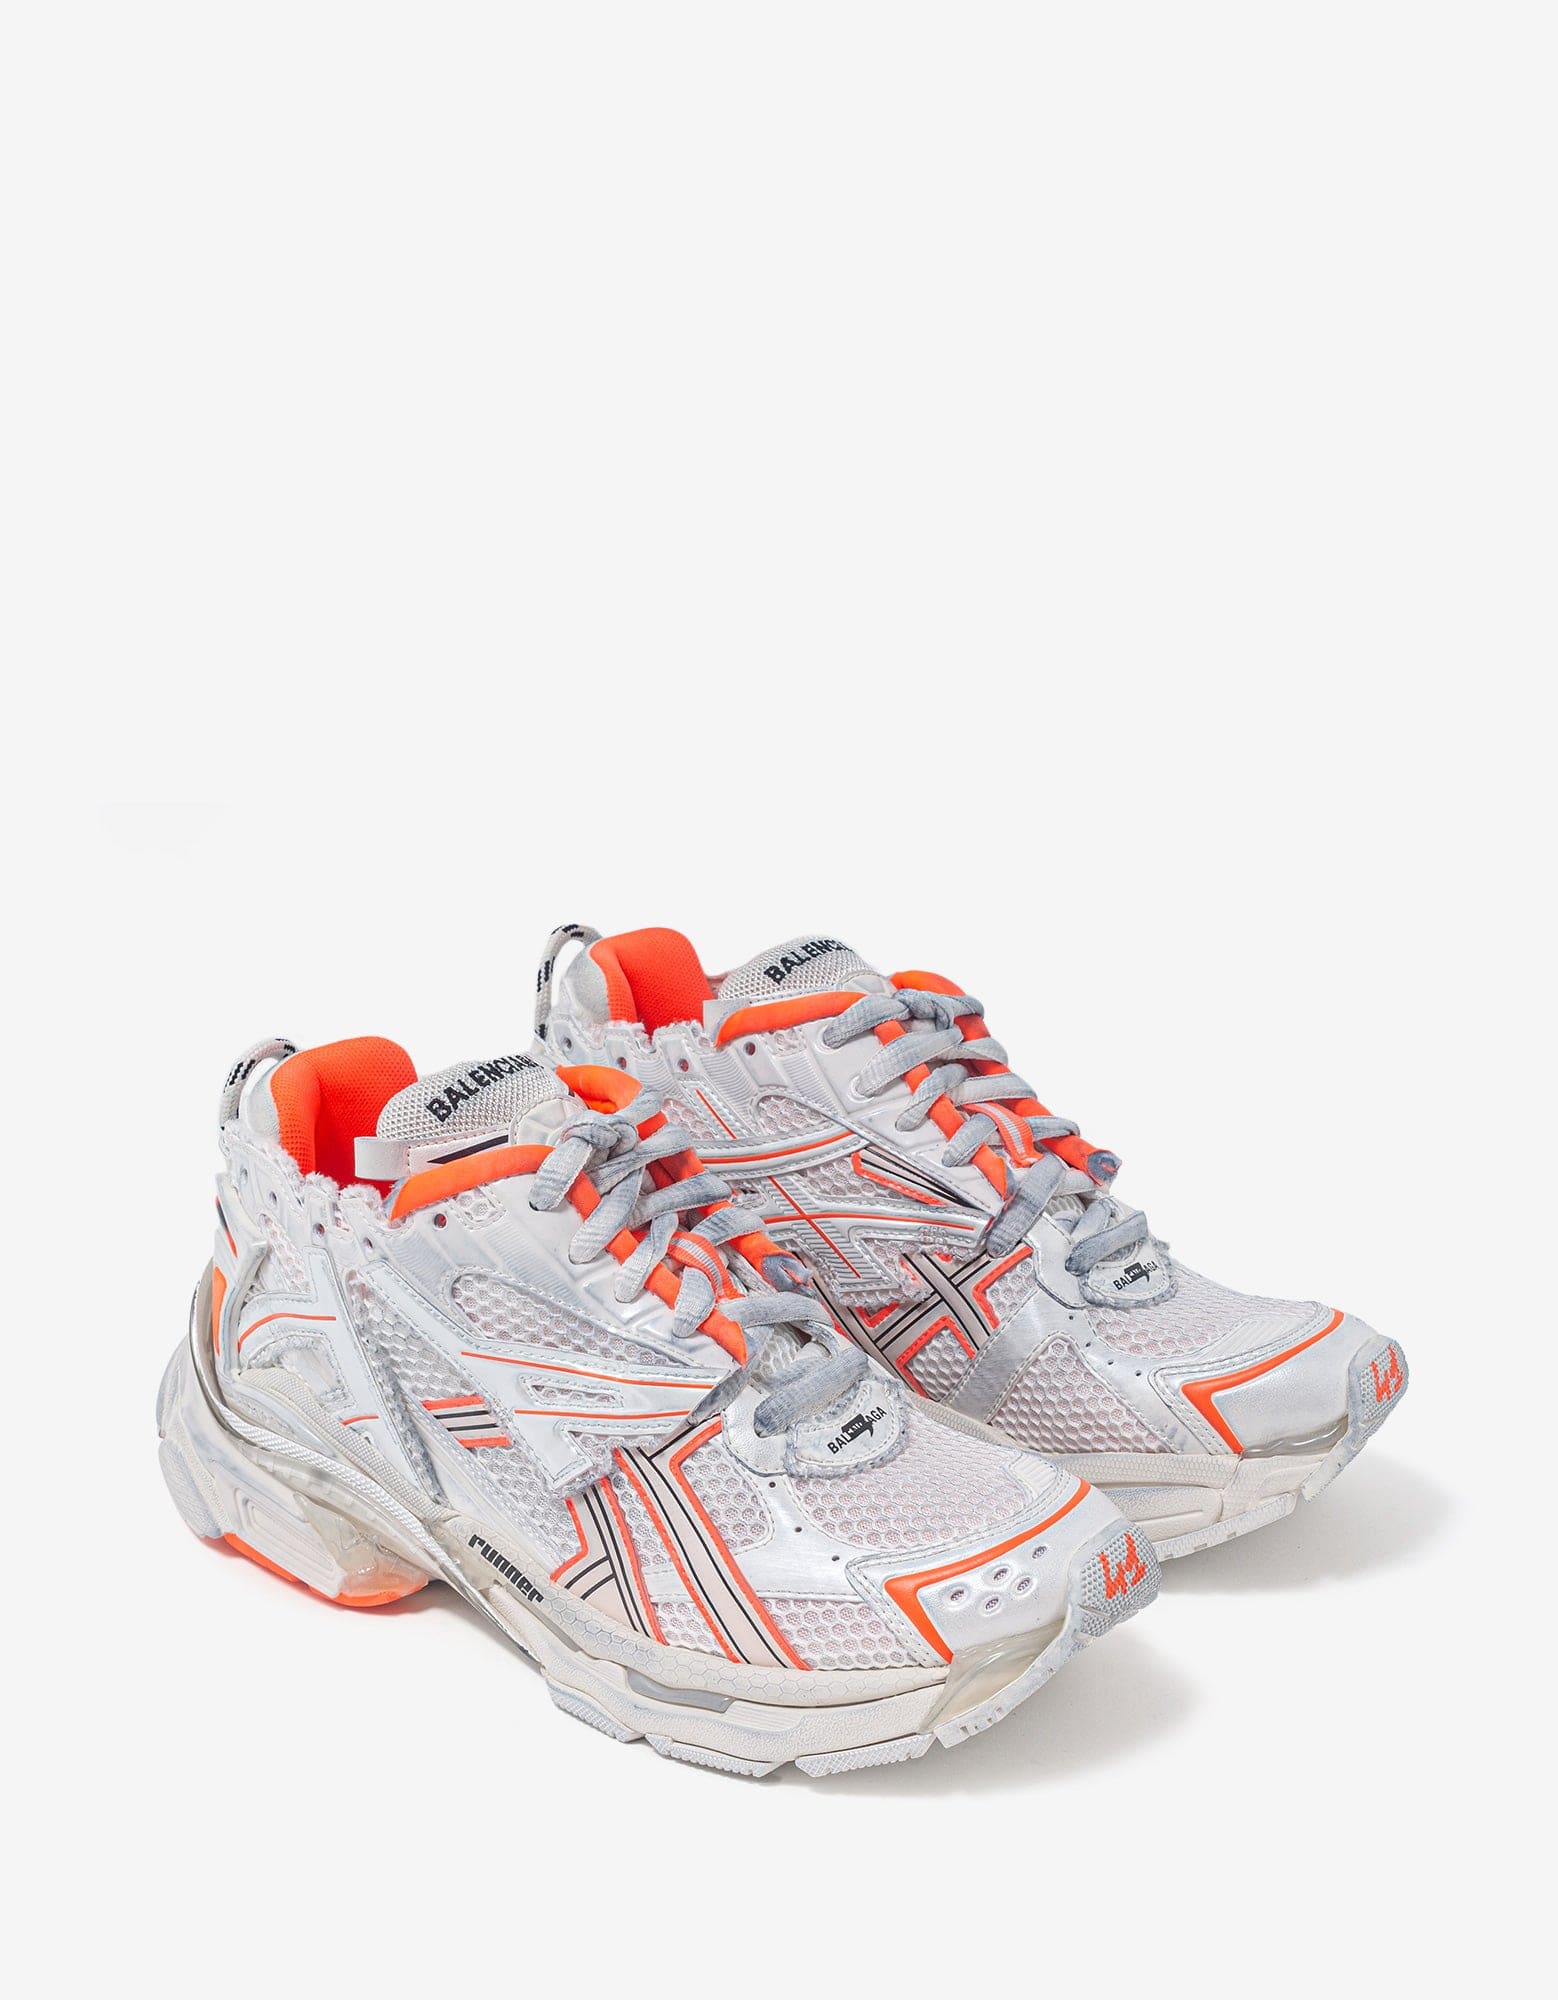 Giày Balenciaga Track Sneaker White Orange 542023W1GB19059   AuthenticShoes